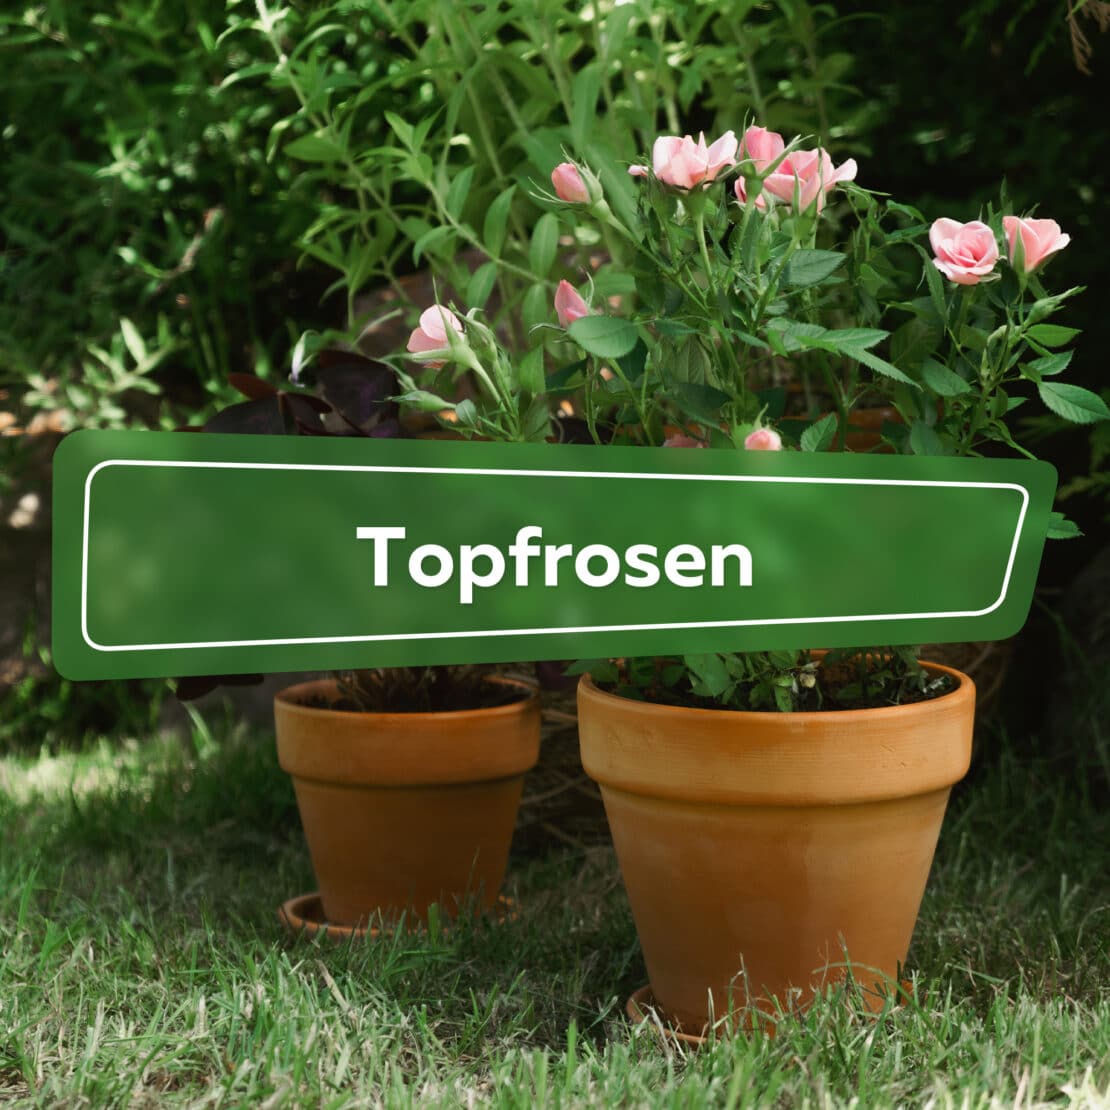 Topfrosen